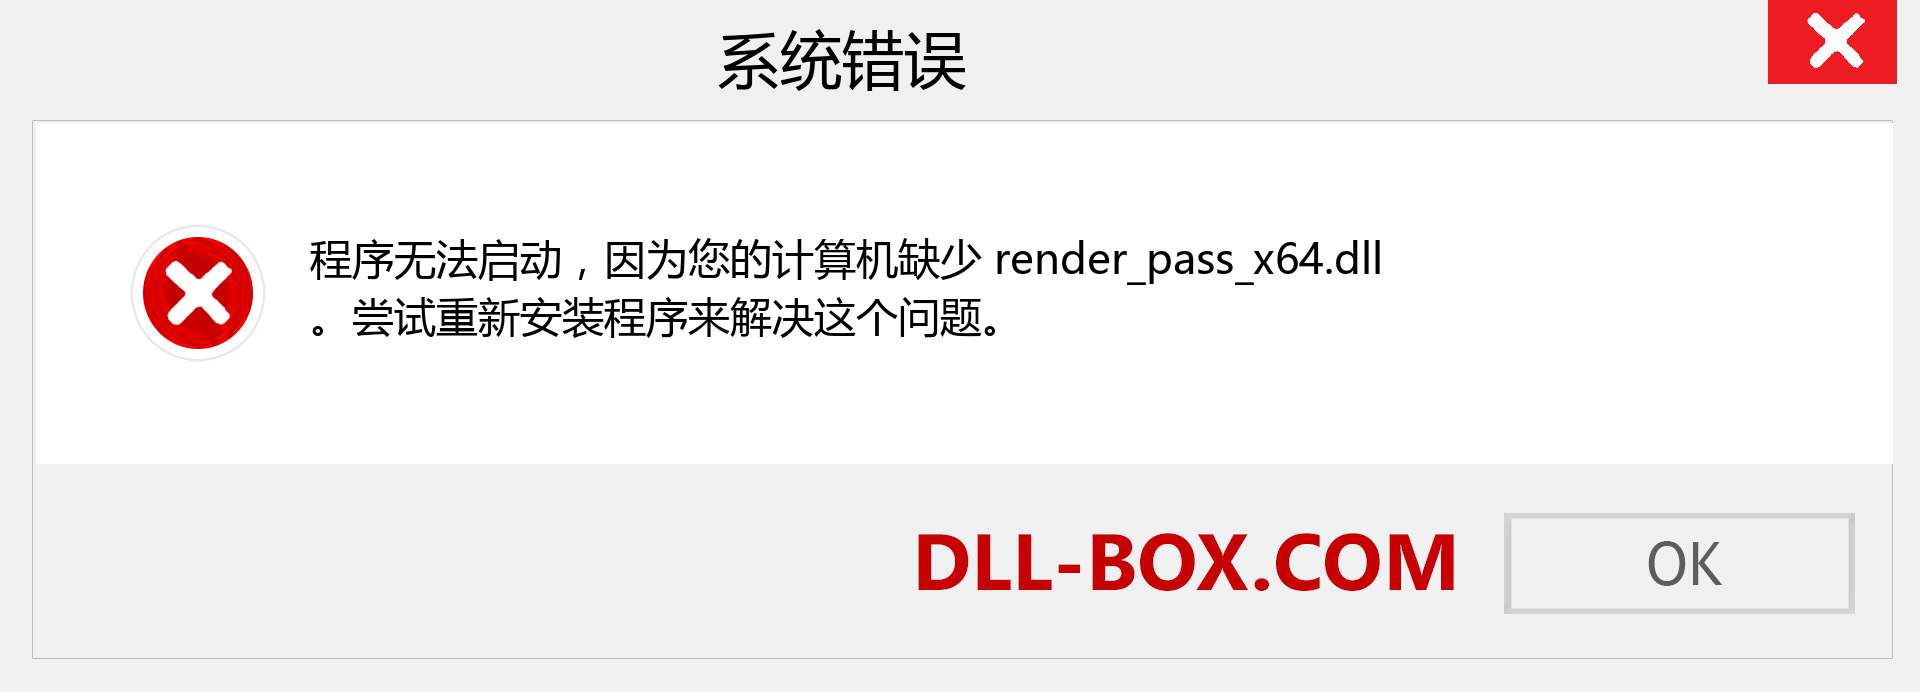 render_pass_x64.dll 文件丢失？。 适用于 Windows 7、8、10 的下载 - 修复 Windows、照片、图像上的 render_pass_x64 dll 丢失错误